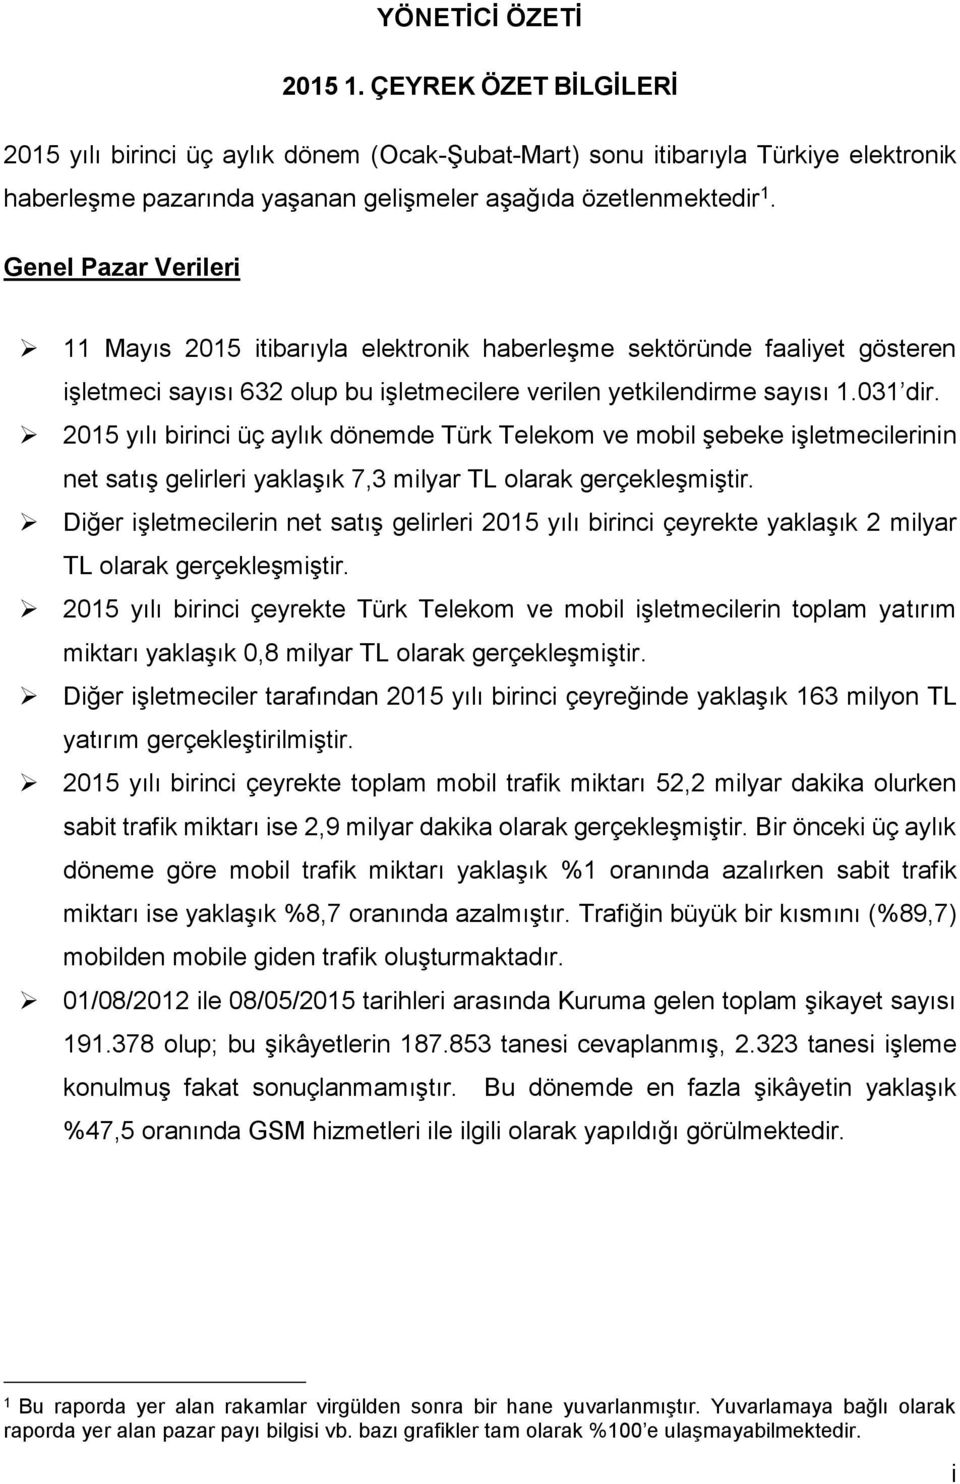 215 yılı birinci üç aylık dönemde Türk Telekom ve mobil şebeke işletmecilerinin net satış gelirleri yaklaşık 7,3 milyar TL olarak gerçekleşmiştir.